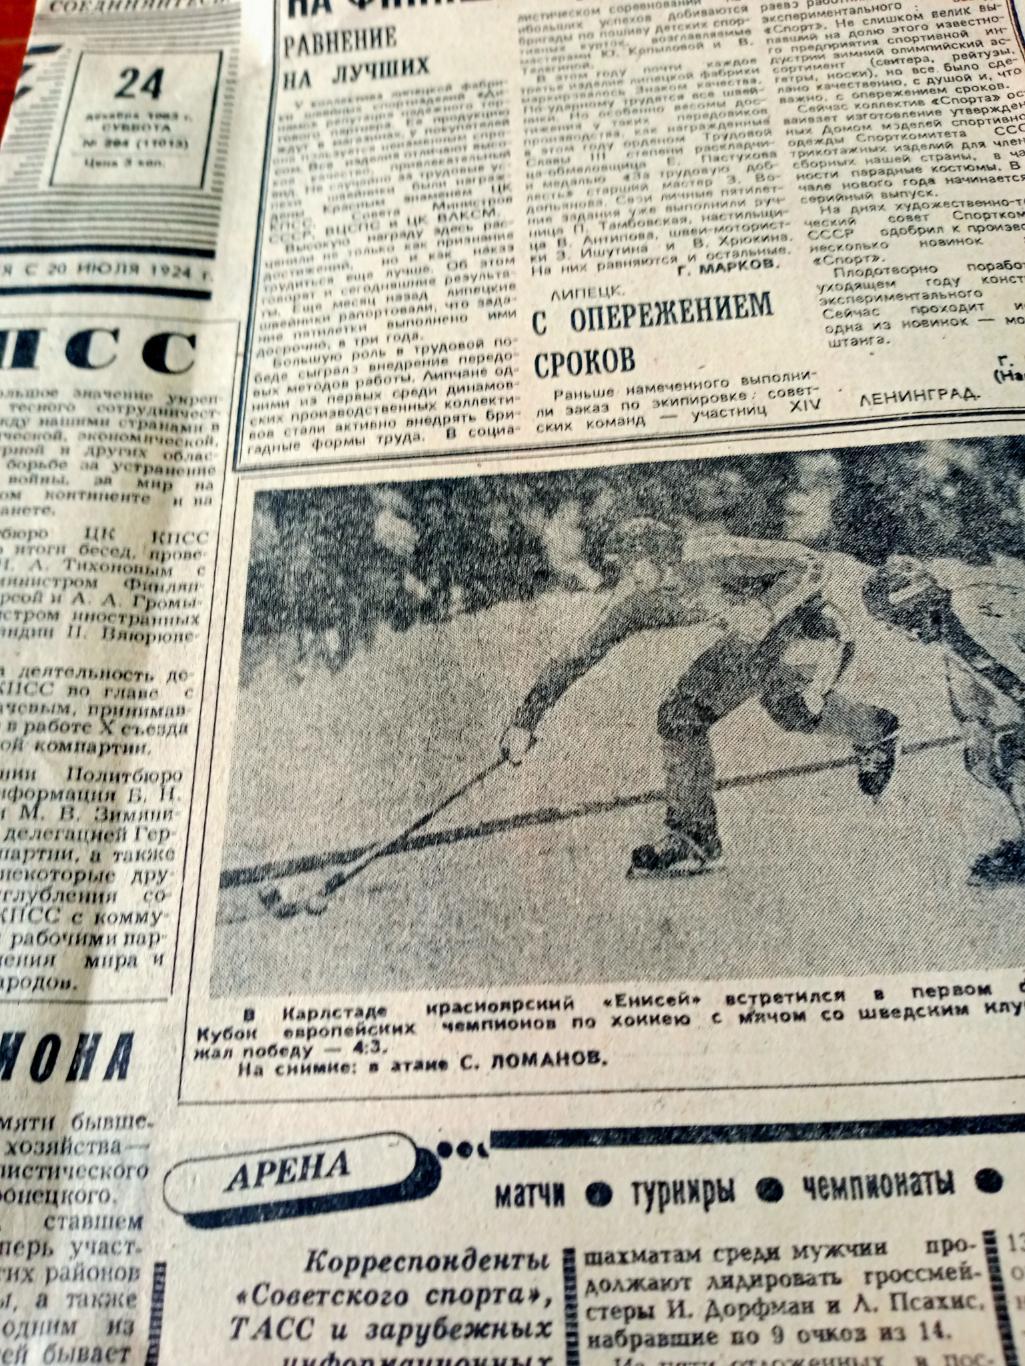 Приключения Золотой Богини. Советский спорт. 1983 год. 24 декабря